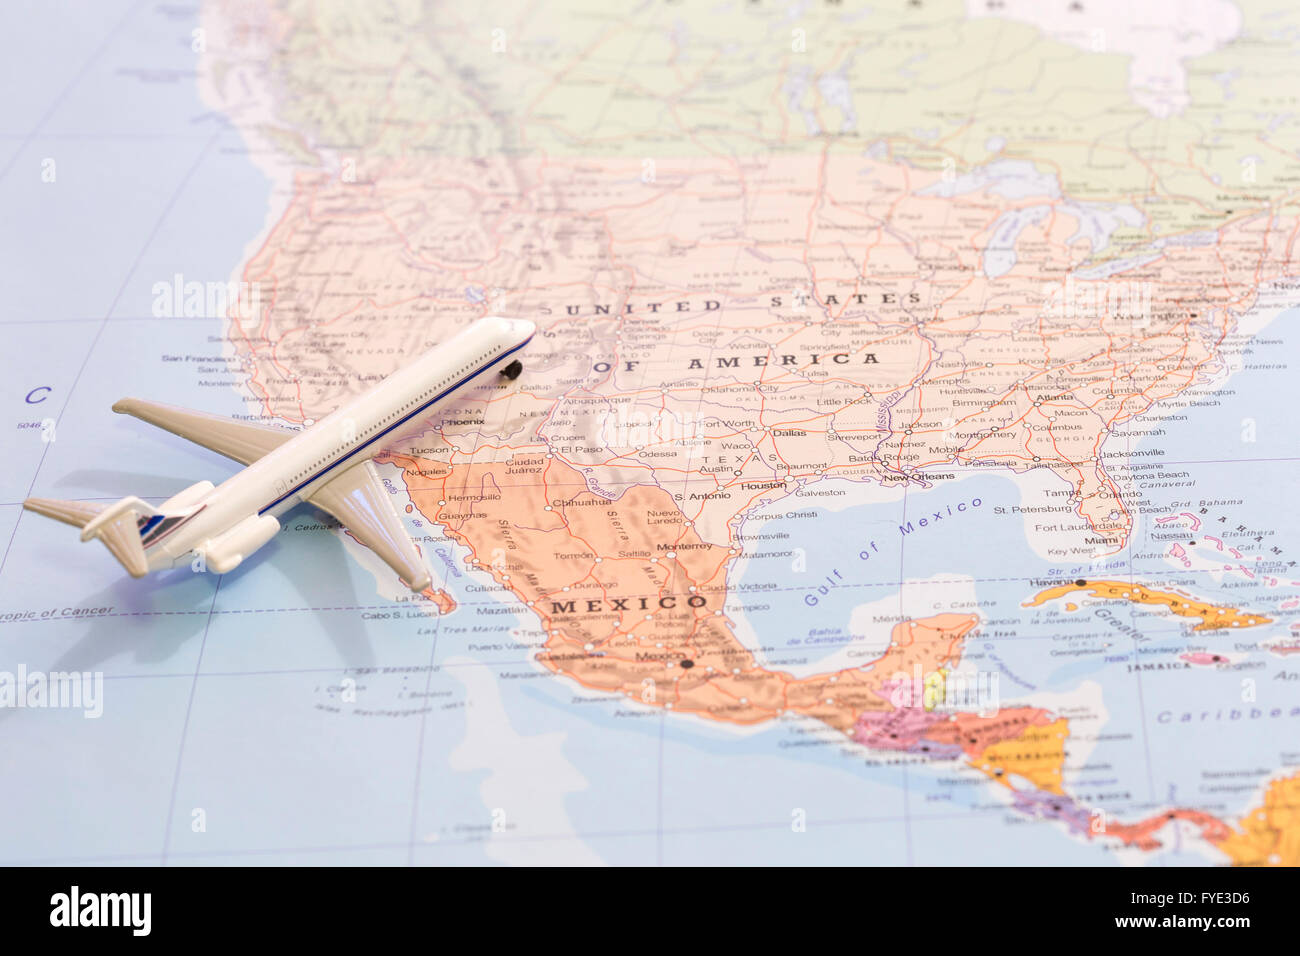 Miniatur mit einem Passagierflugzeug fliegen auf der Karte der Vereinigten Staaten von Amerika aus Süd-West. Konzeptbild für Reisen und Stockfoto